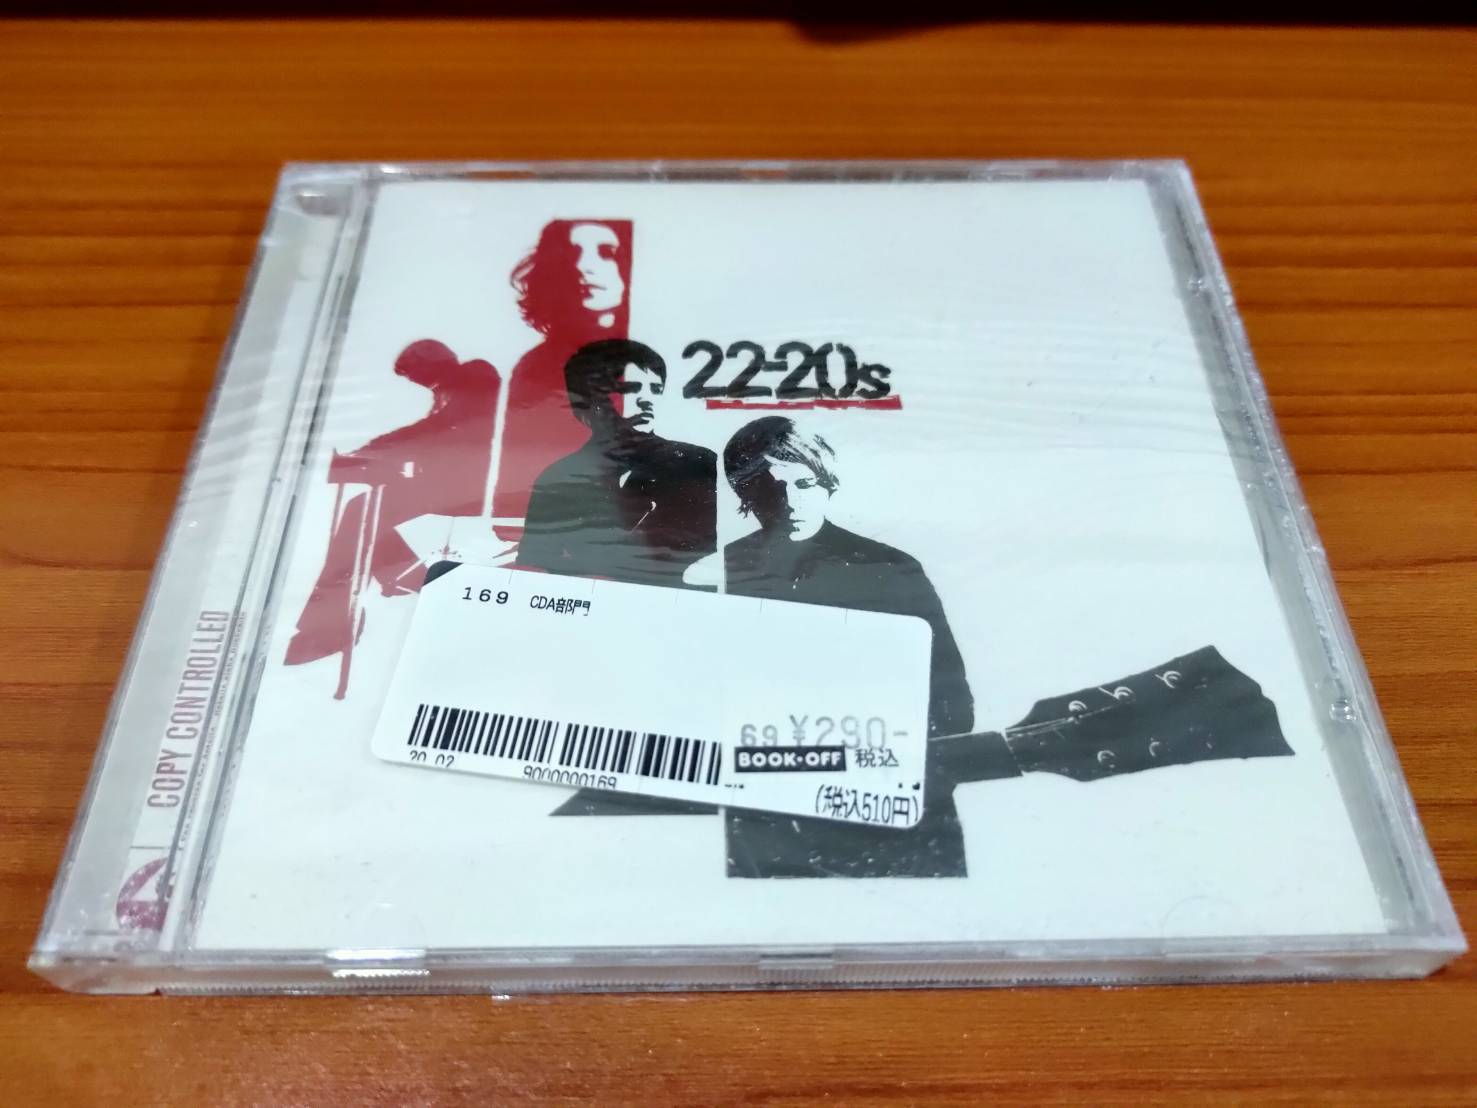 CD.MUSIC ซีดีเพลงสากล 22-20s